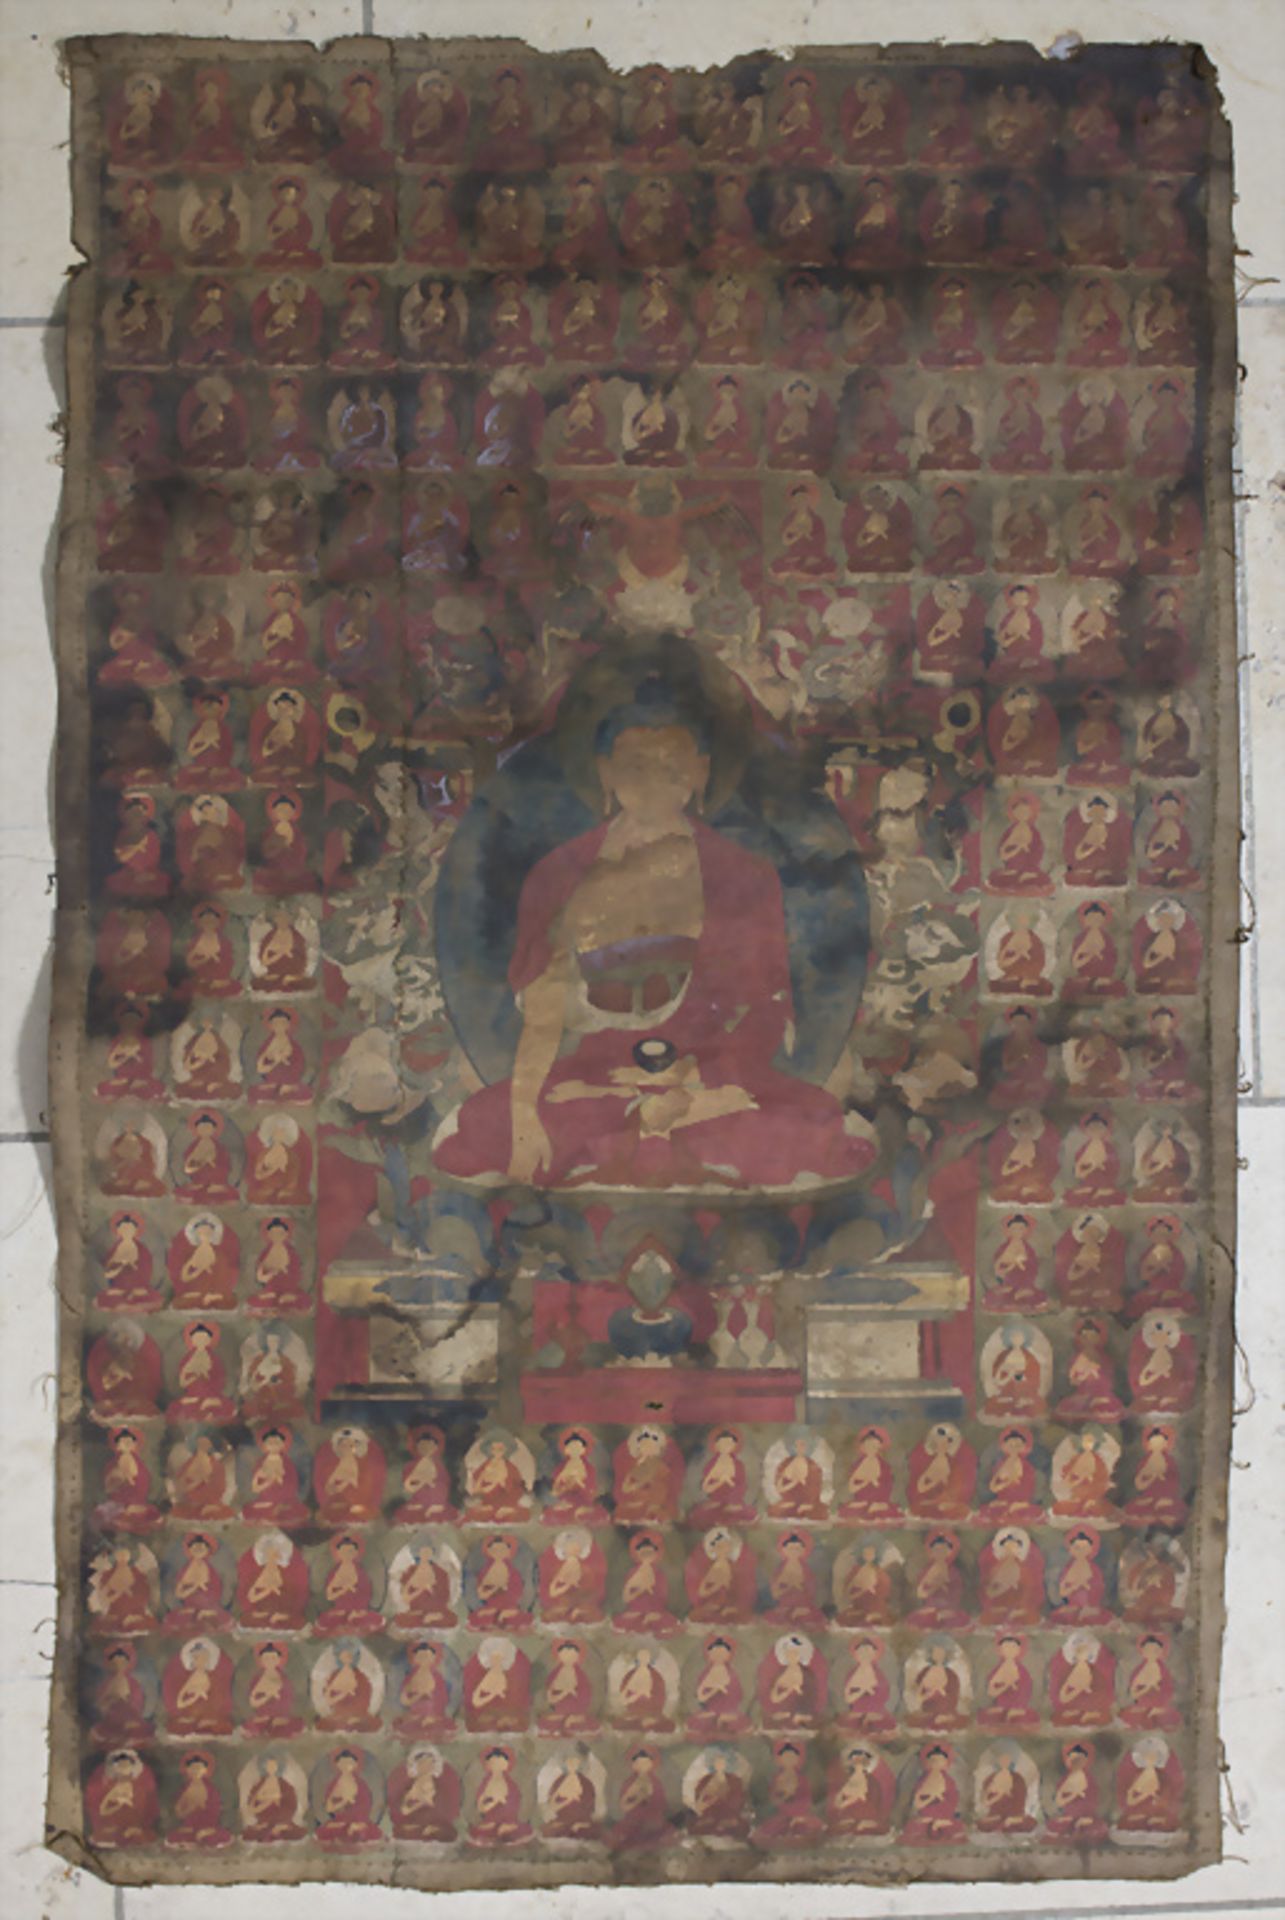 Tangka mit Buddha im Lotussitz / A tangka with Buddha in the lotus position, Tibet, 18. Jh.